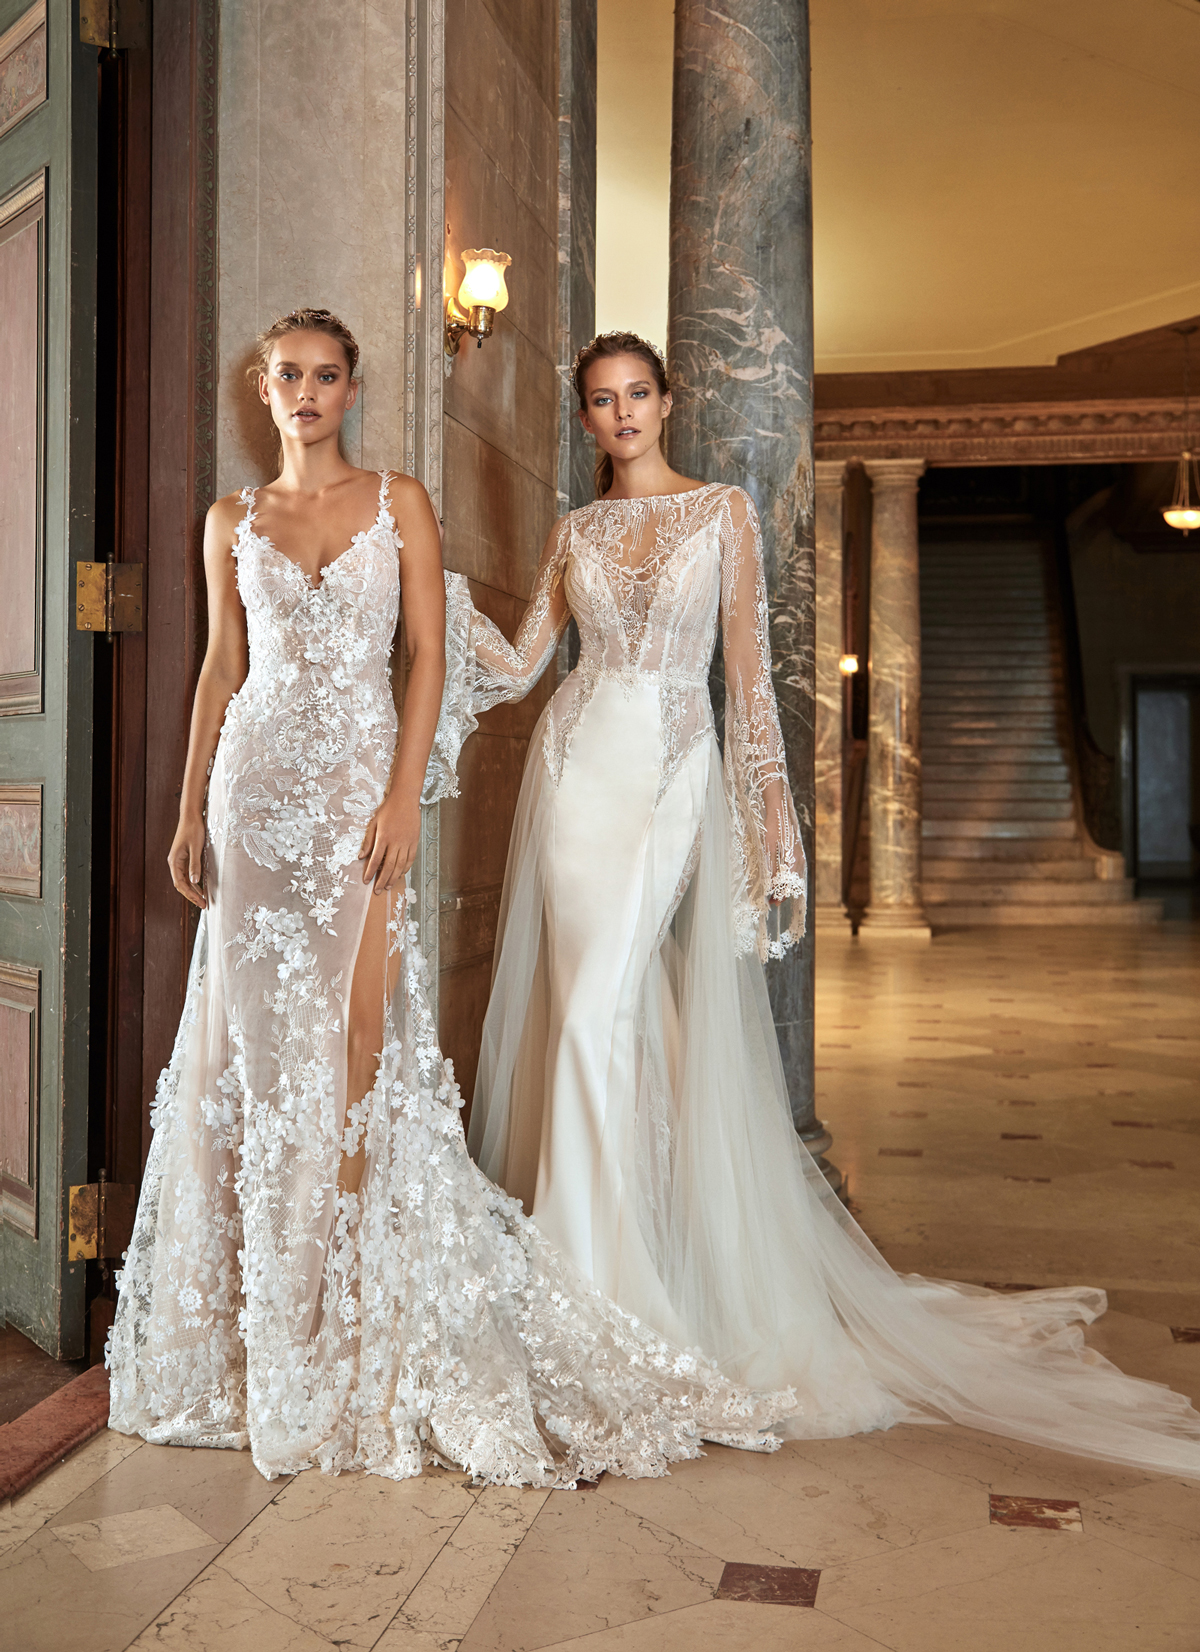 Chiêm ngưỡng bộ sưu tập váy cưới đẹp như nữ thần của thương hiệu váy cưới đình đám Galia Lahav cùng các thiết kế vô cùng tinh tế, gợi cảm và chất liệu vải sang trọng.